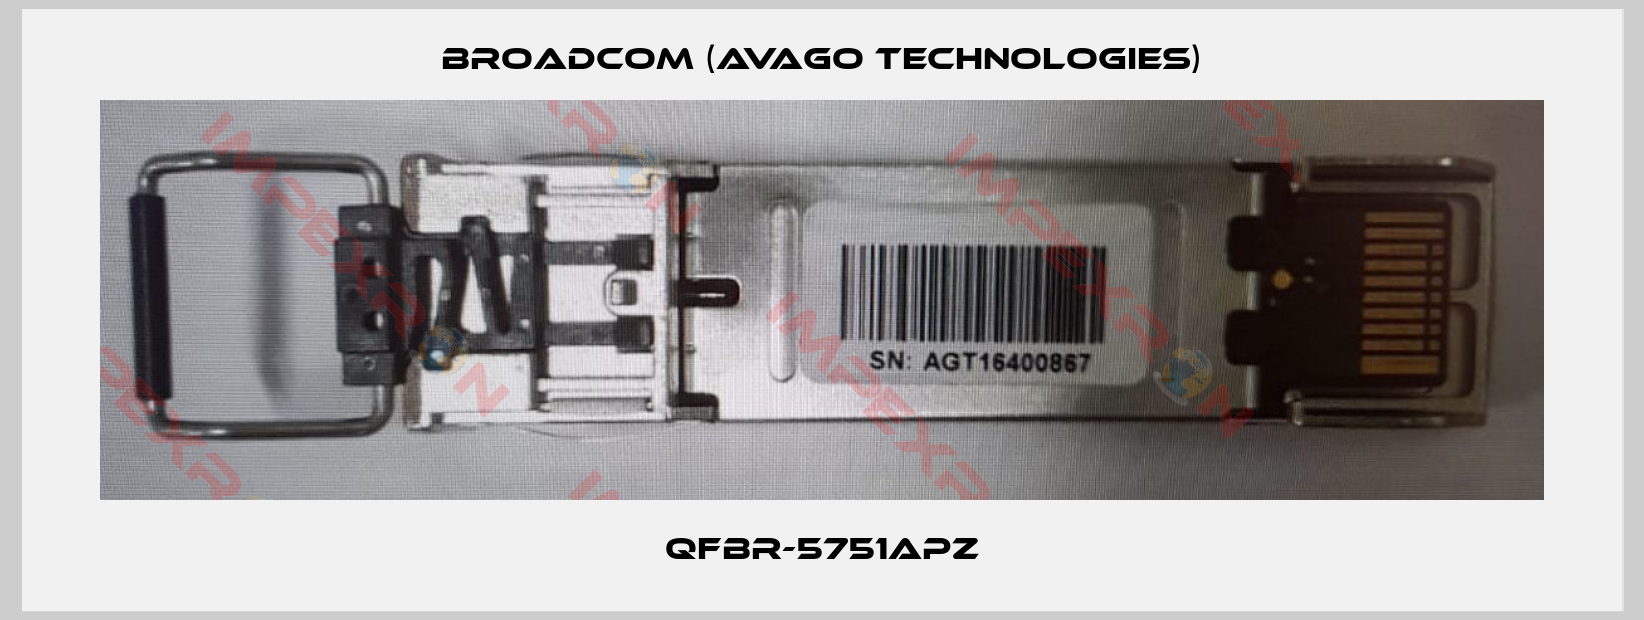 Broadcom (Avago Technologies)-QFBR-5751APZ